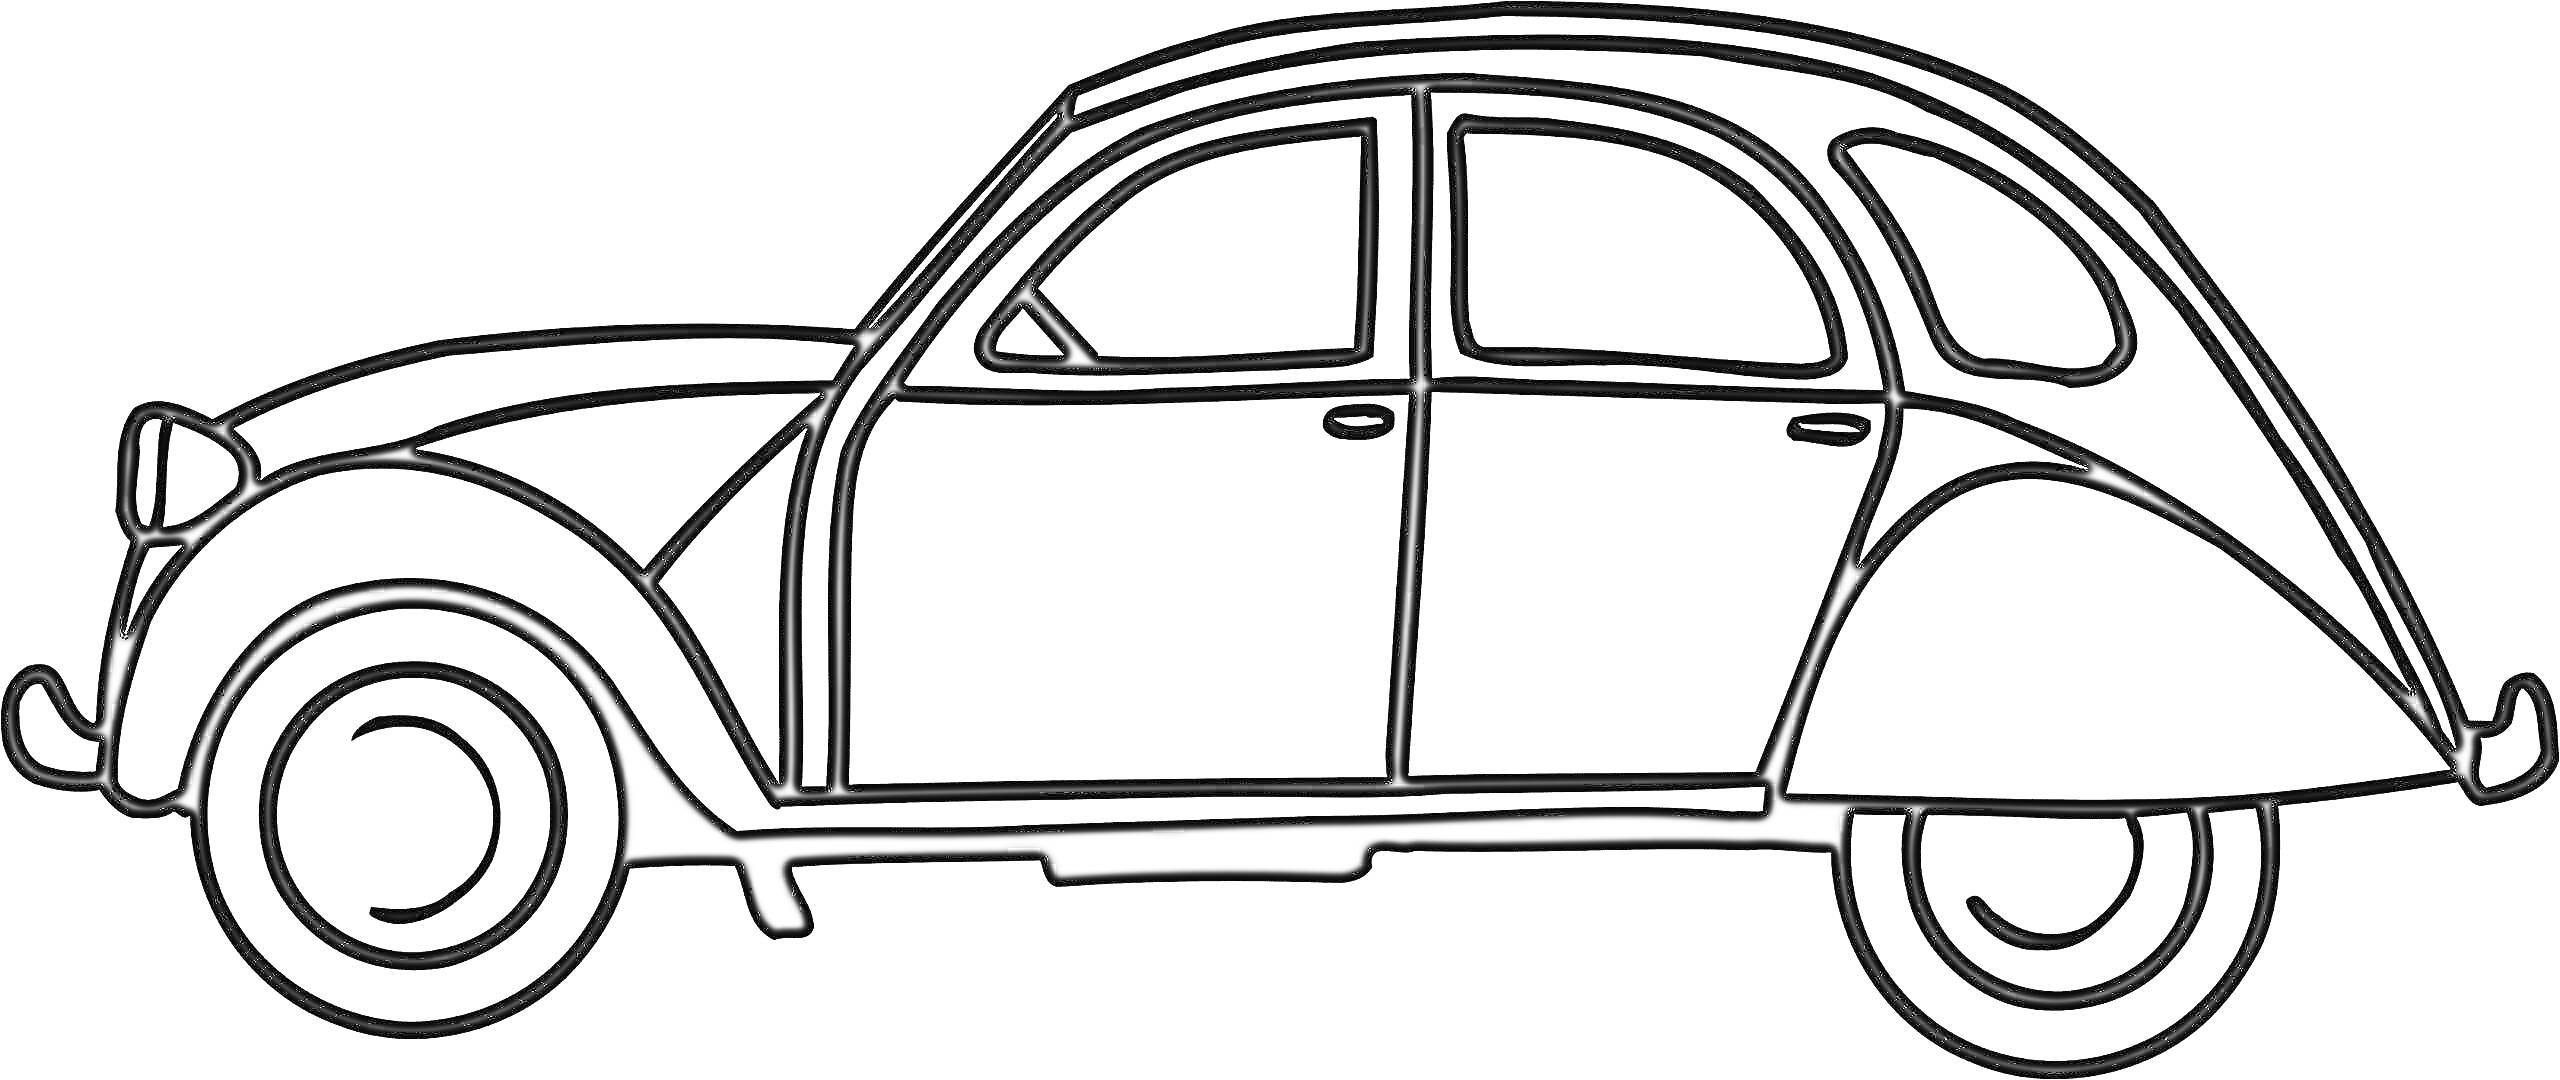 Чёрно-белая раскраска машины, профиль классического автомобиля с двумя дверями и круглой крышей